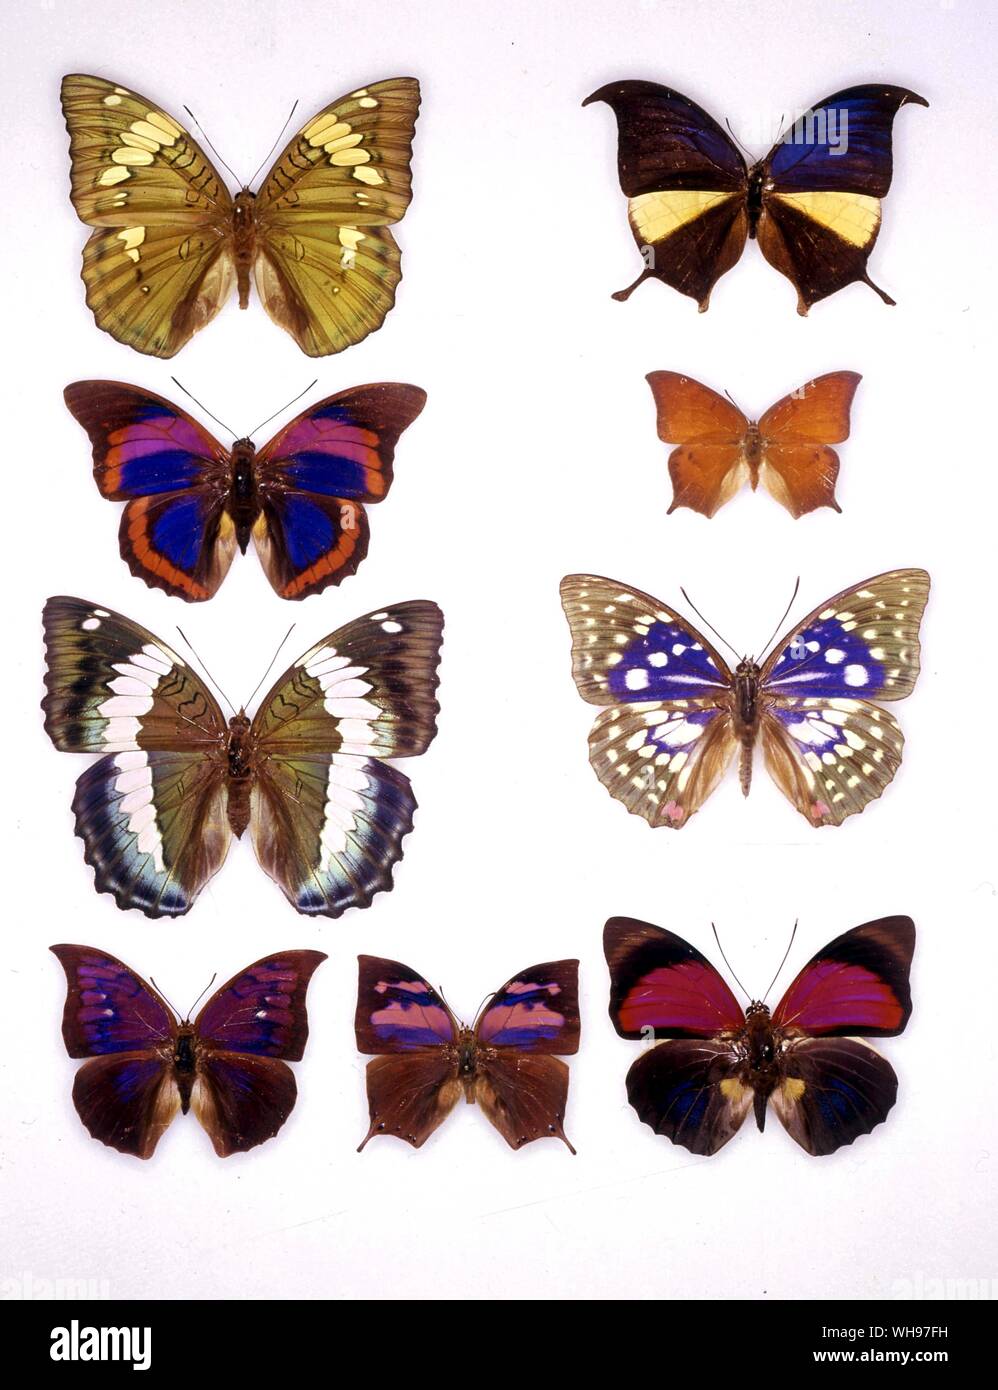 Butterflies/moths - (left to right) Euthalia patala, Anaea panariste, Prepona praeneste, Anaea andria, Euthalia durga, Sasakia charonda, Anaea tyrianthina, Anaea nessus, Agrias claudia Stock Photo